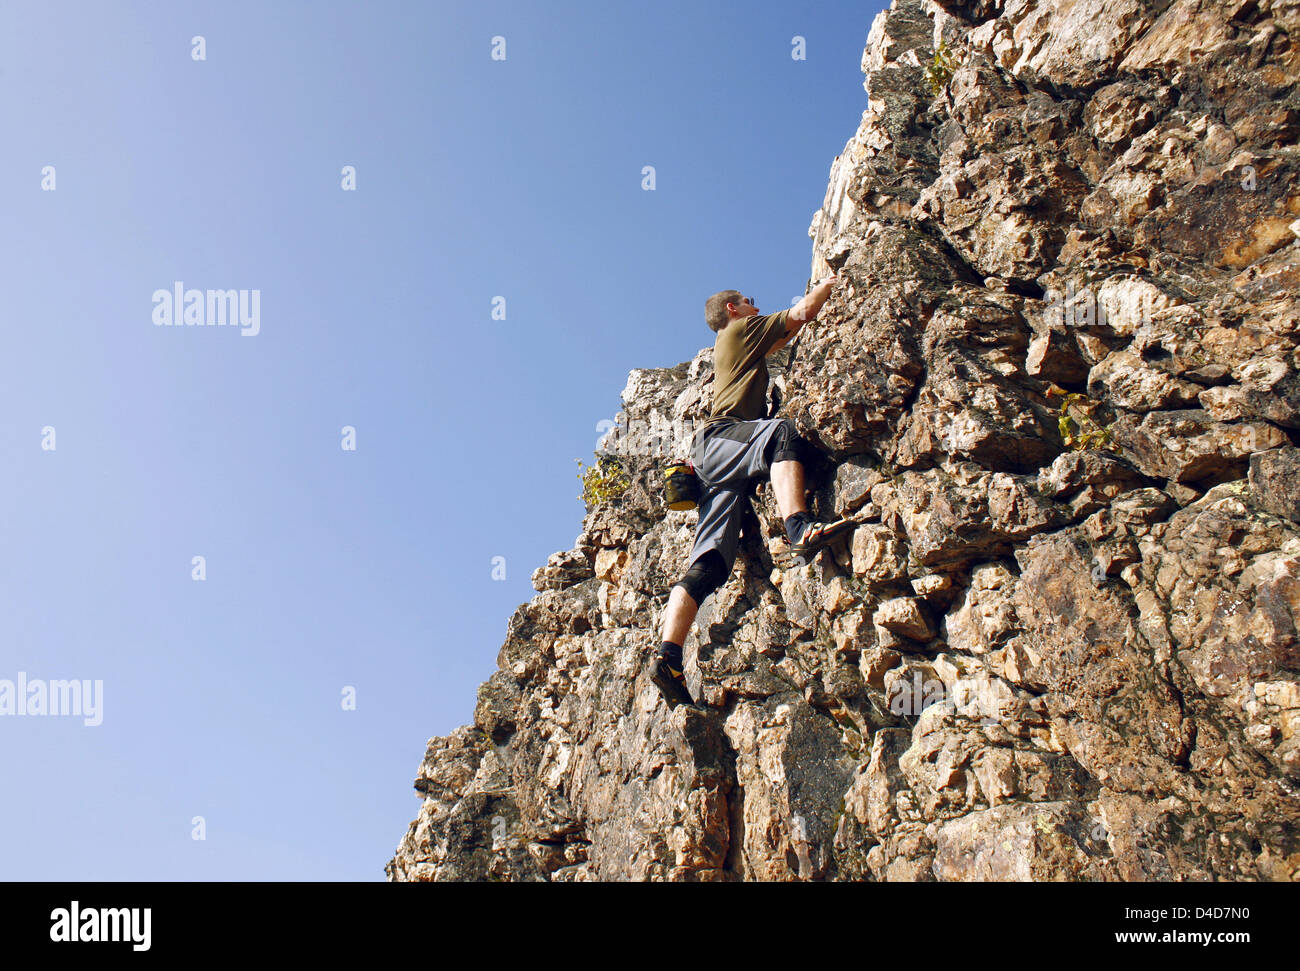 (Dpa-Datei) Die Datei Aufnahme im Sommer 2007 zeigt einen Mann-Bouldern in den sogenannten Eschenbach Klippen bei Usingen, Deutschland. Bouldern ist im Grunde eine Form von freies Klettern ohne jeden Schutz, sondern bewegliche Horizontal statt vertikal. Foto: Wlfram Steinberg Stockfoto